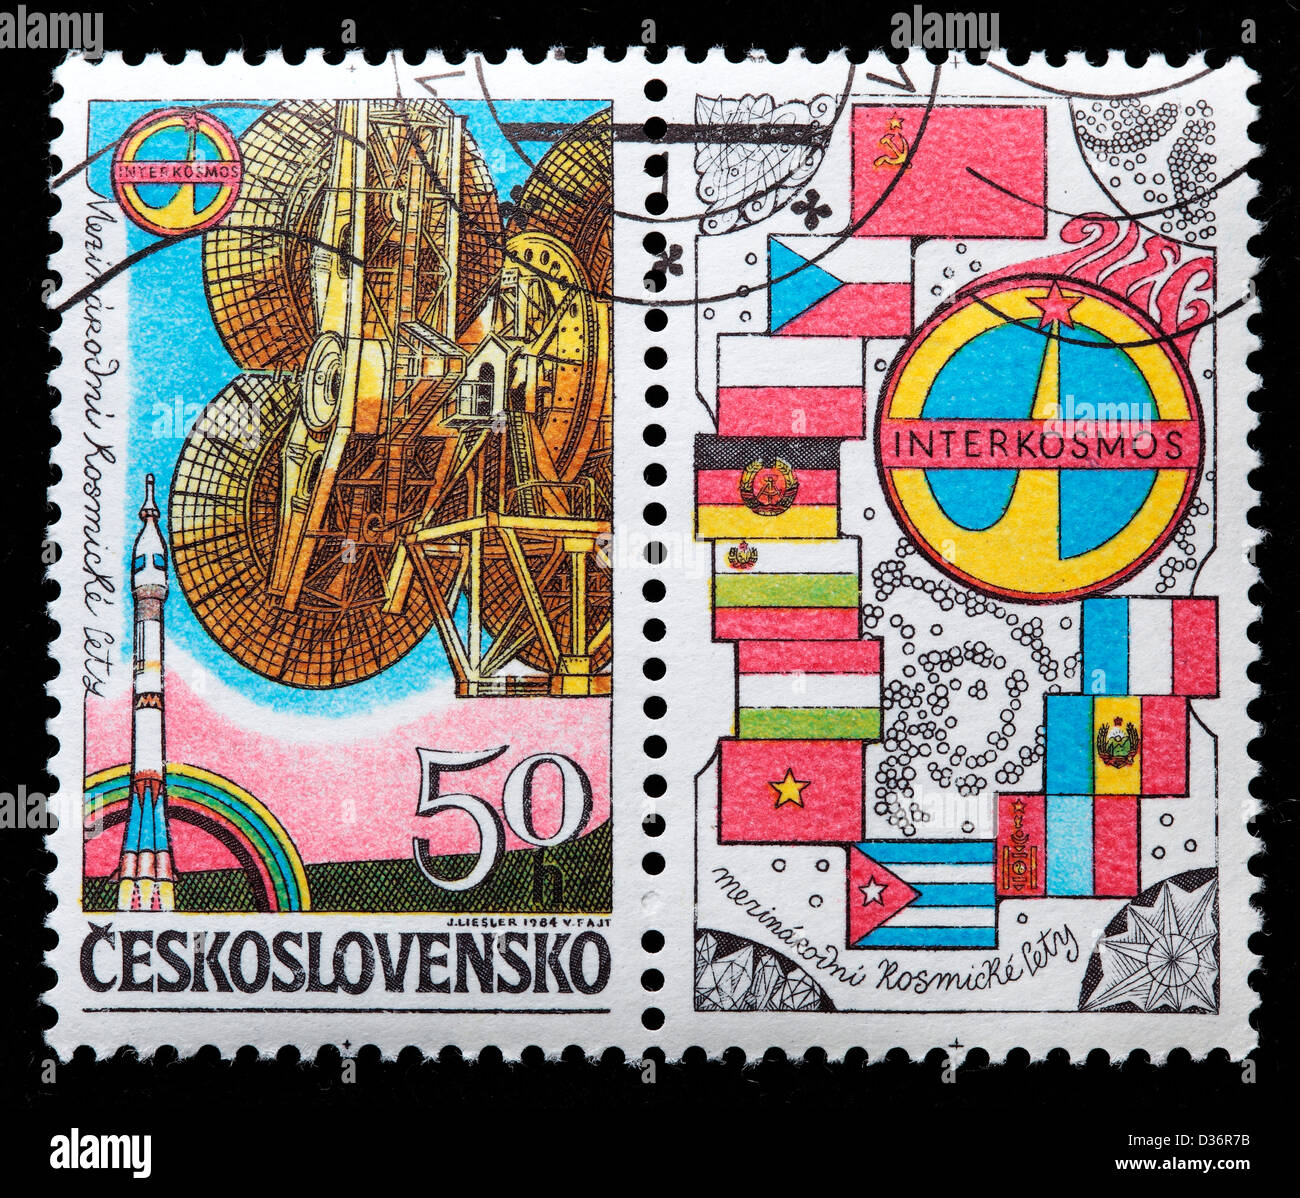 Programa espacial INTERCOSMOS, sello, Checoslovaquia, 1984 Foto de stock